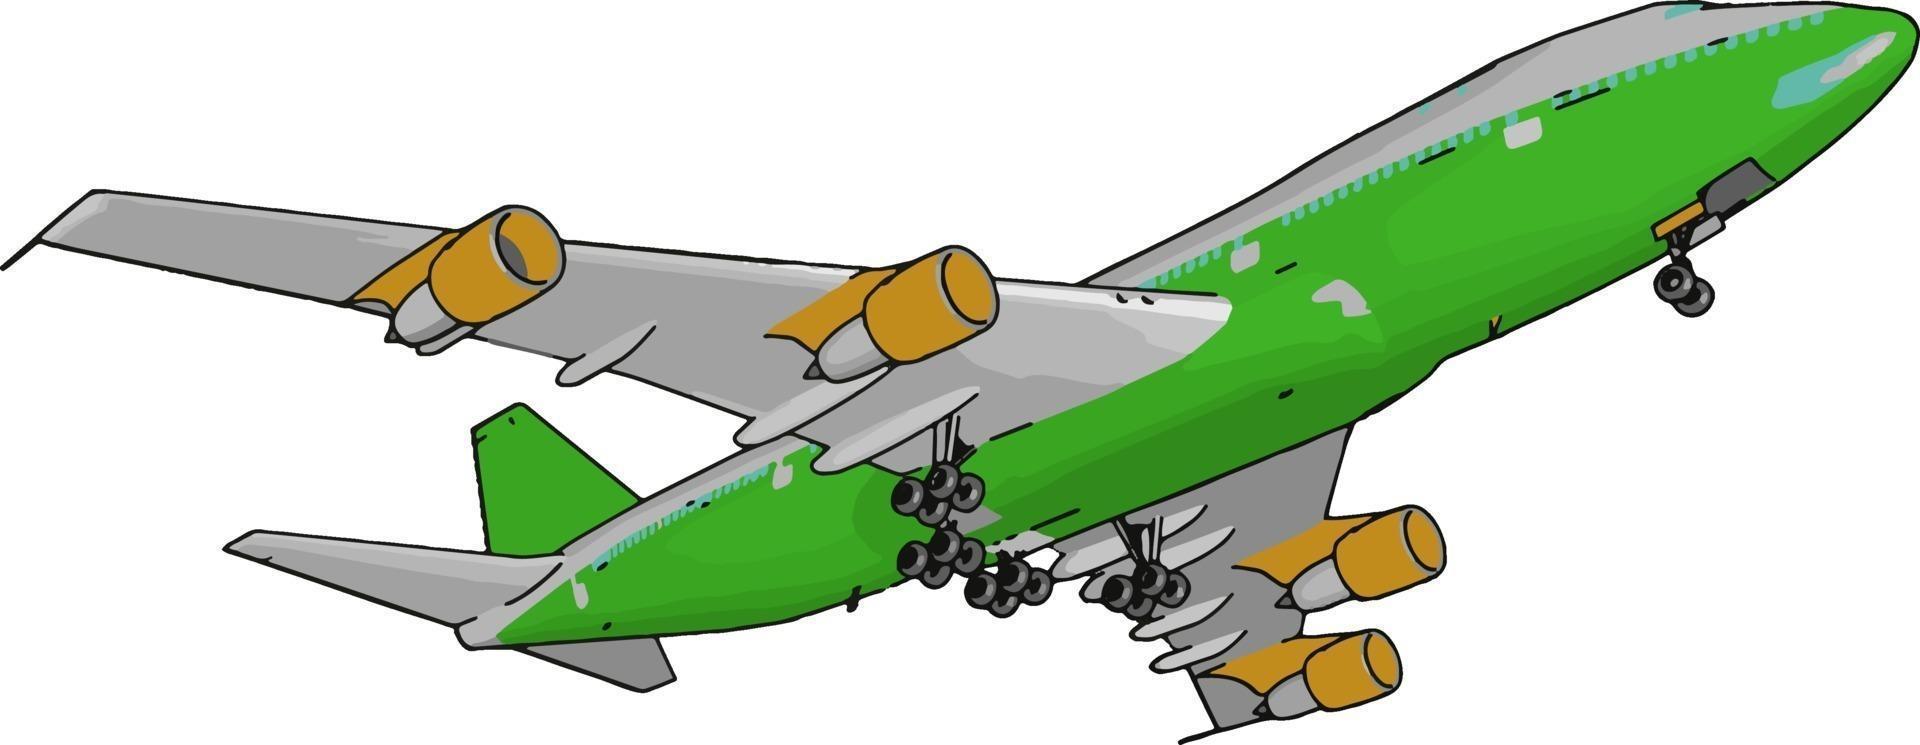 Grünes Passagierflugzeug, Illustration, Vektor auf weißem Hintergrund.